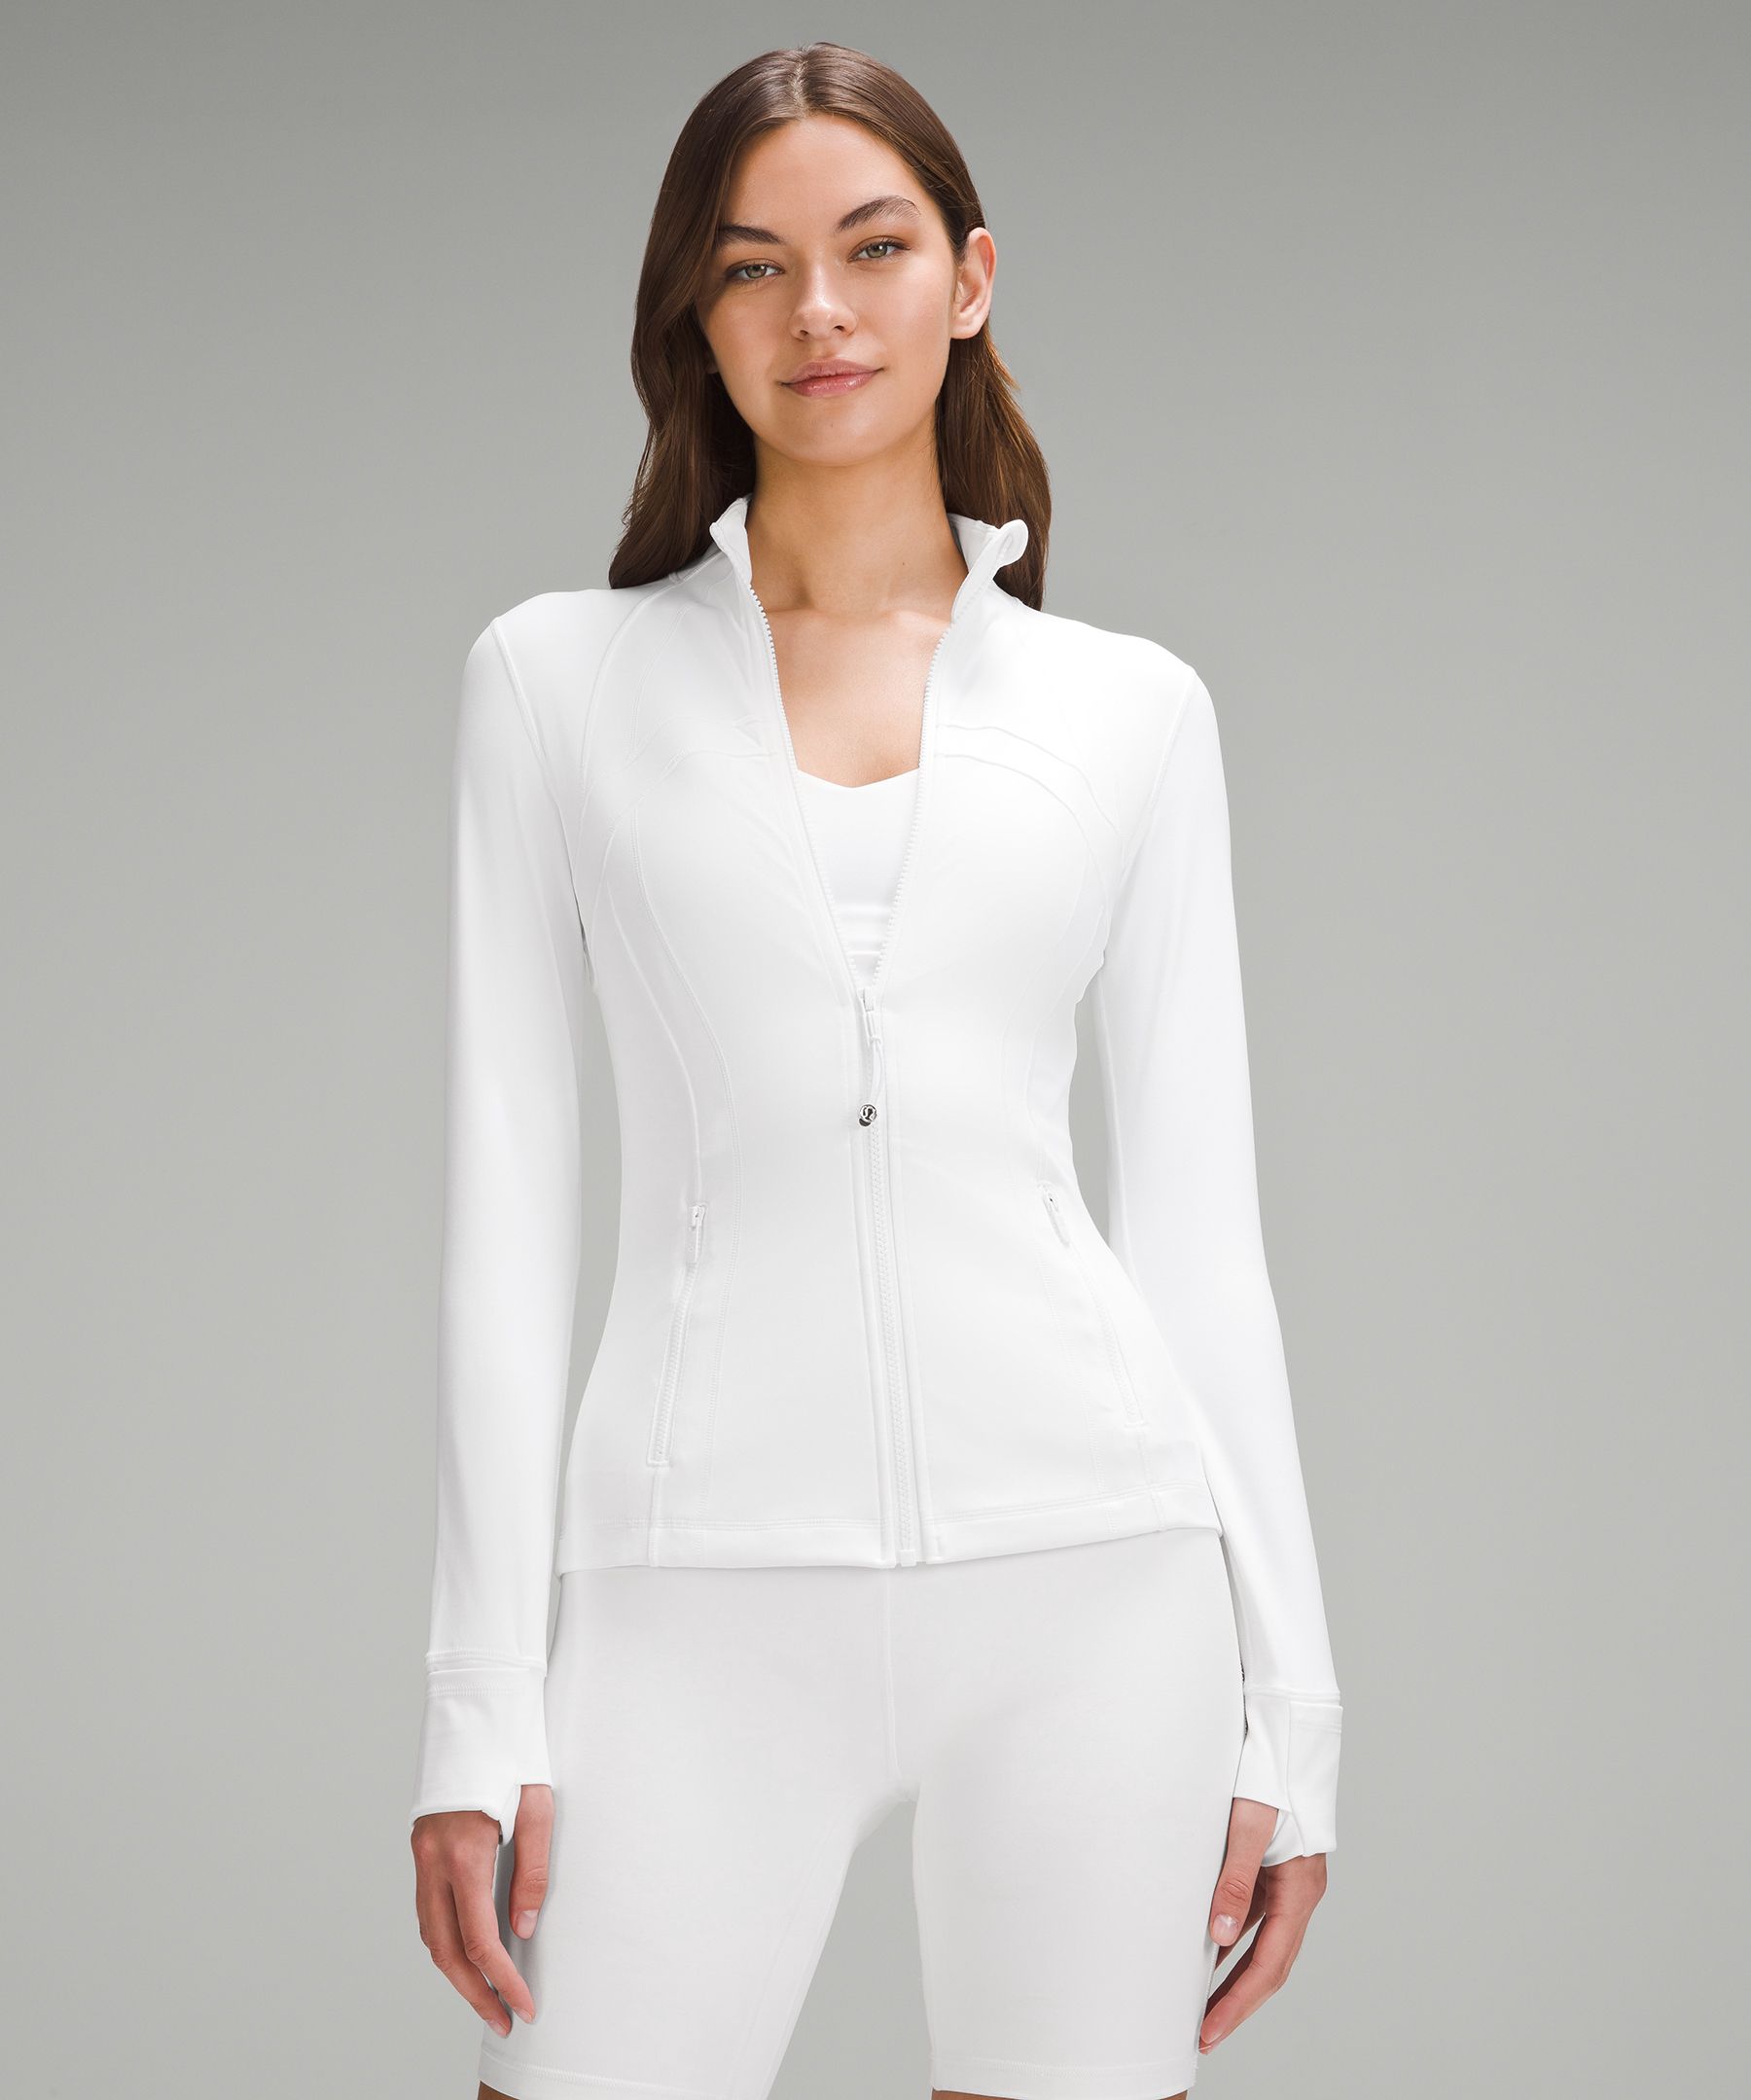 Define Jacket, Women's Jackets, lululemon #white #athletic #jacket White  define jacket